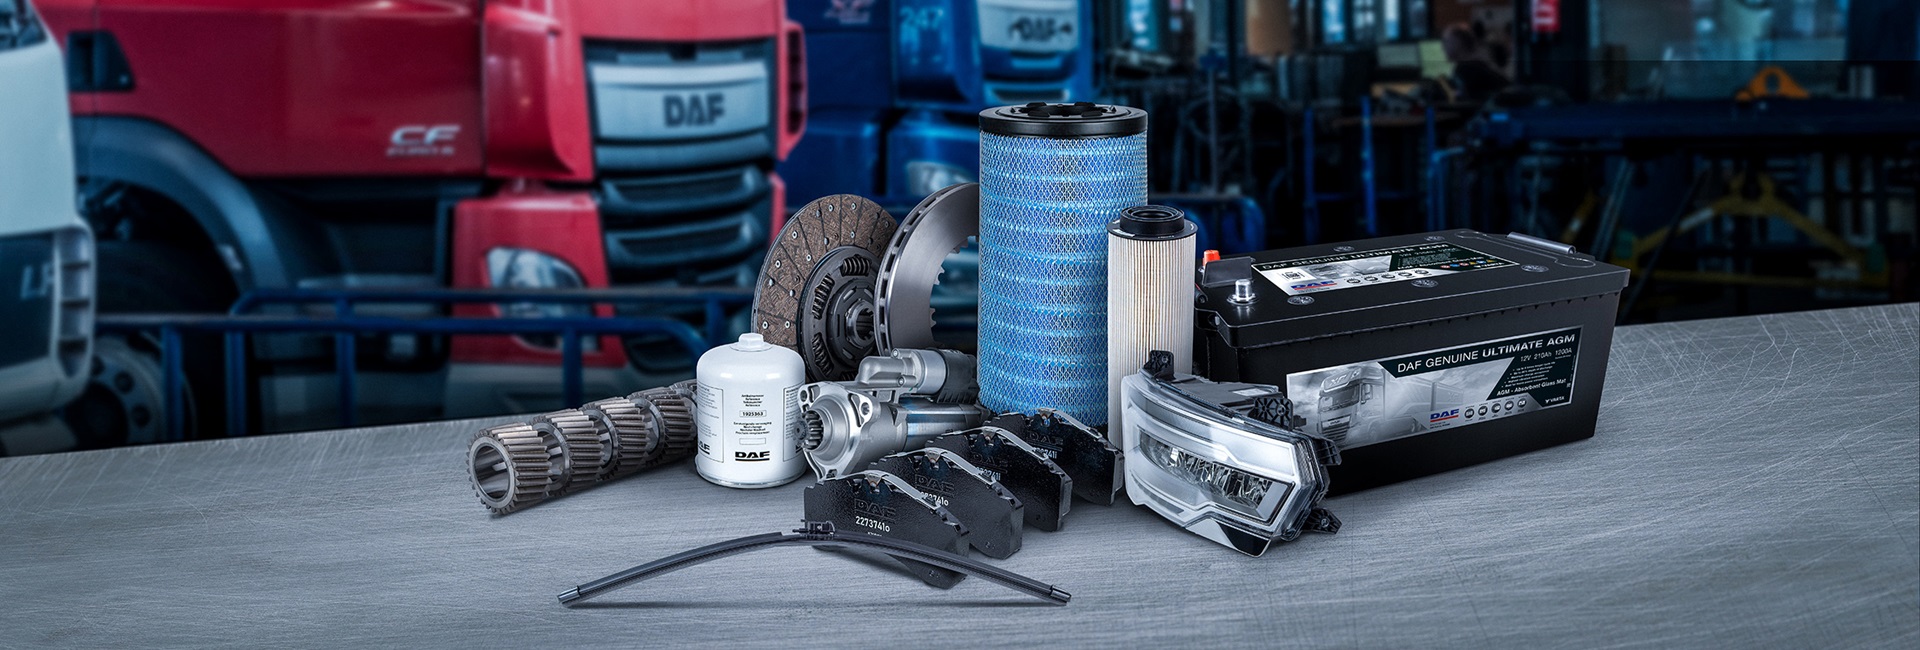 Originalteile- DAF Trucks Deutschland GmbH